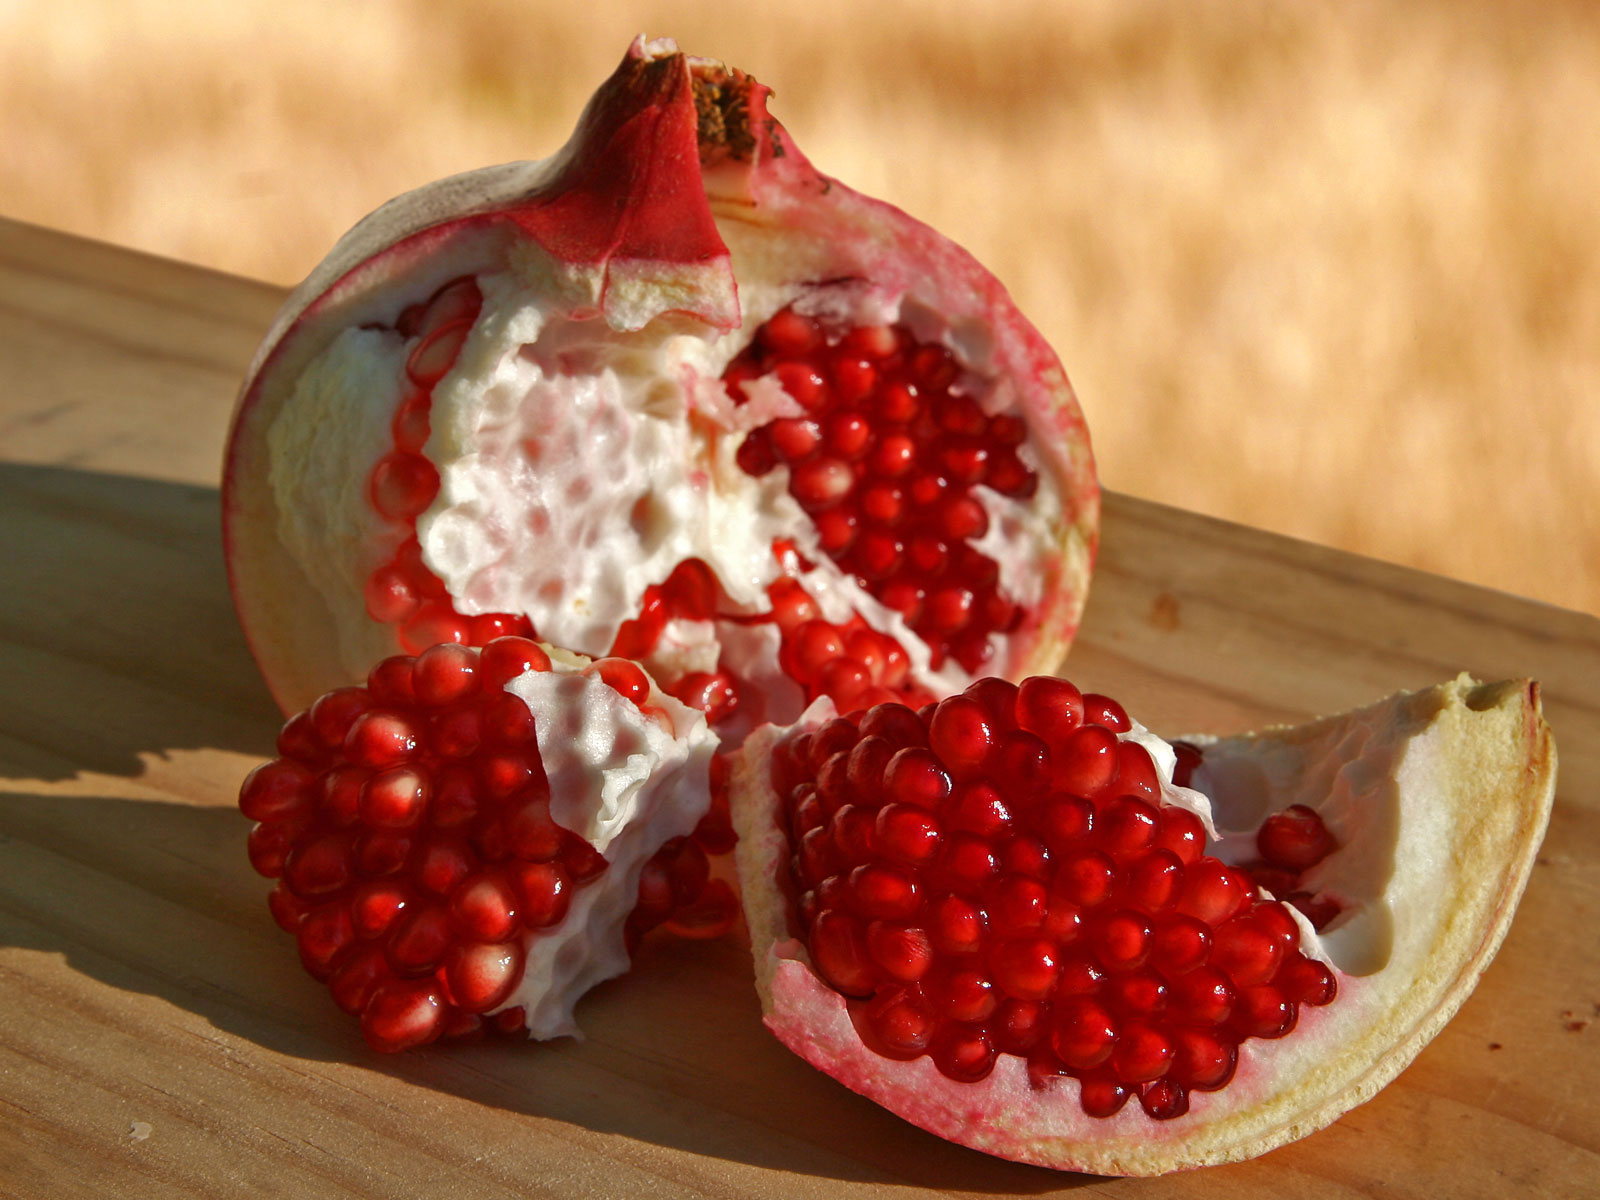 Pomegranate Fruits. Español: Una granada, frut...